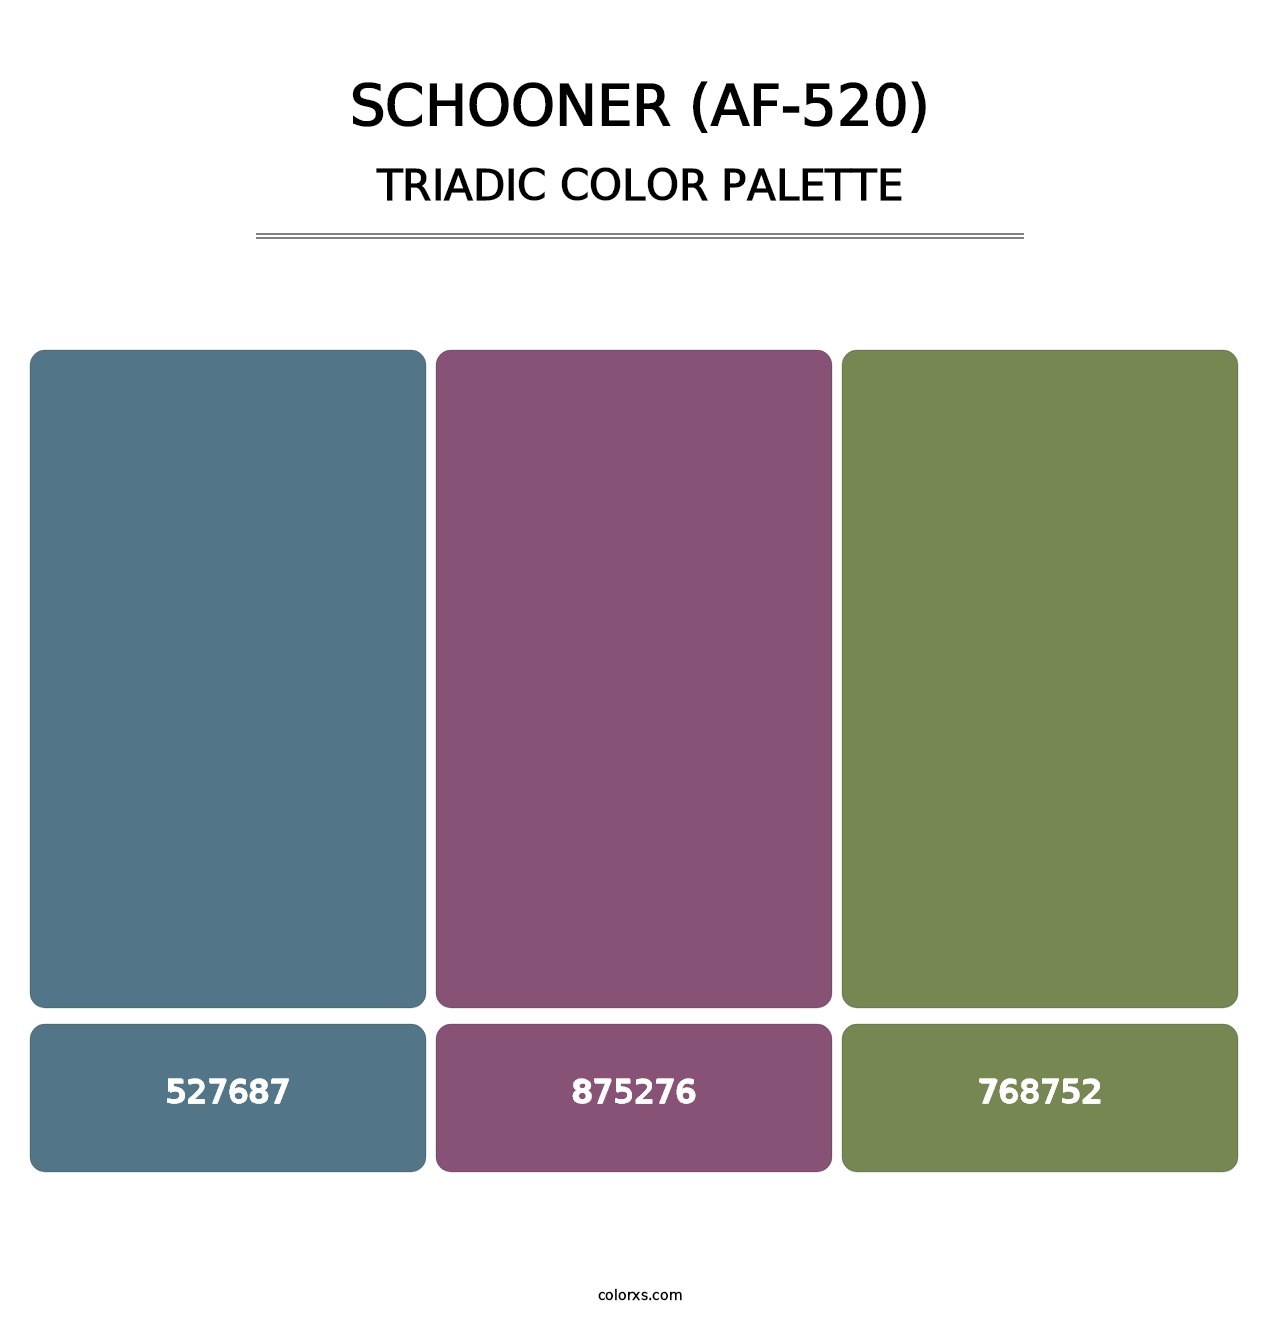 Schooner (AF-520) - Triadic Color Palette